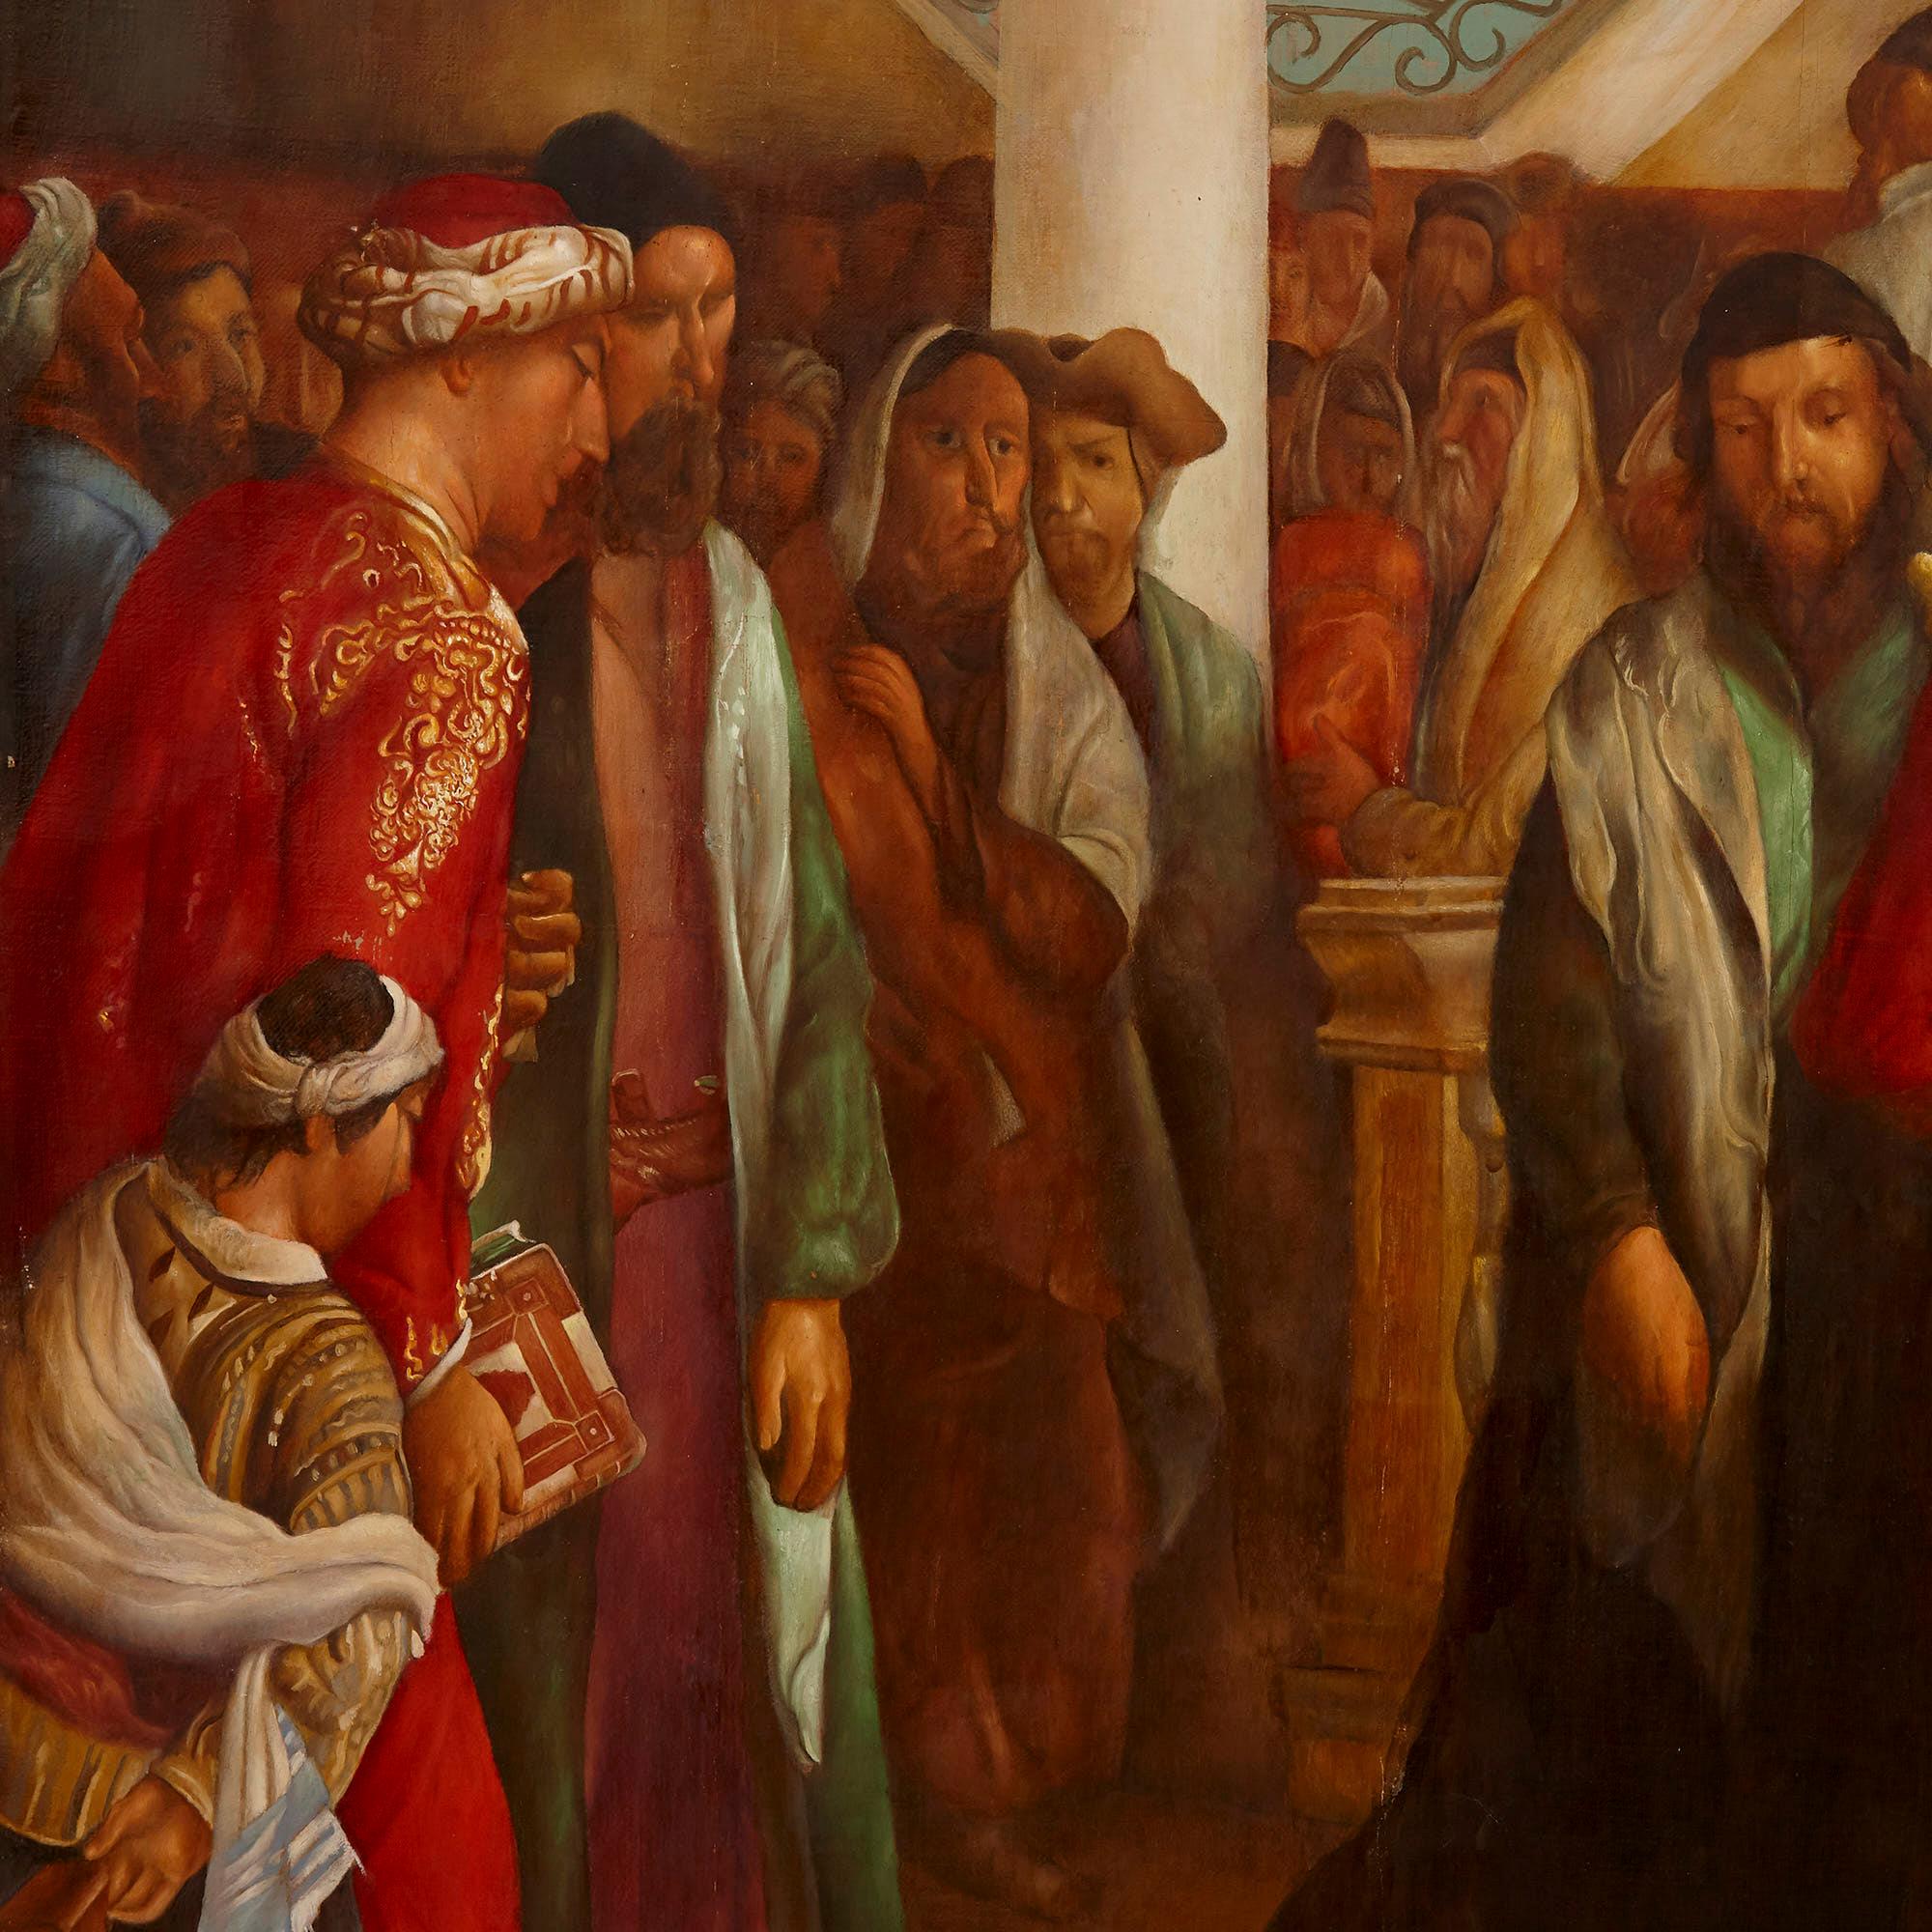 Dieses große und beeindruckende Gemälde in Öl auf Leinwand stellt die Prozession der Tora dar, ein Ereignis, das während des jüdischen Festes Simchat Tora stattfindet. Schauplatz ist eine Synagoge in Livorno, Italien; die Szene ist schwach